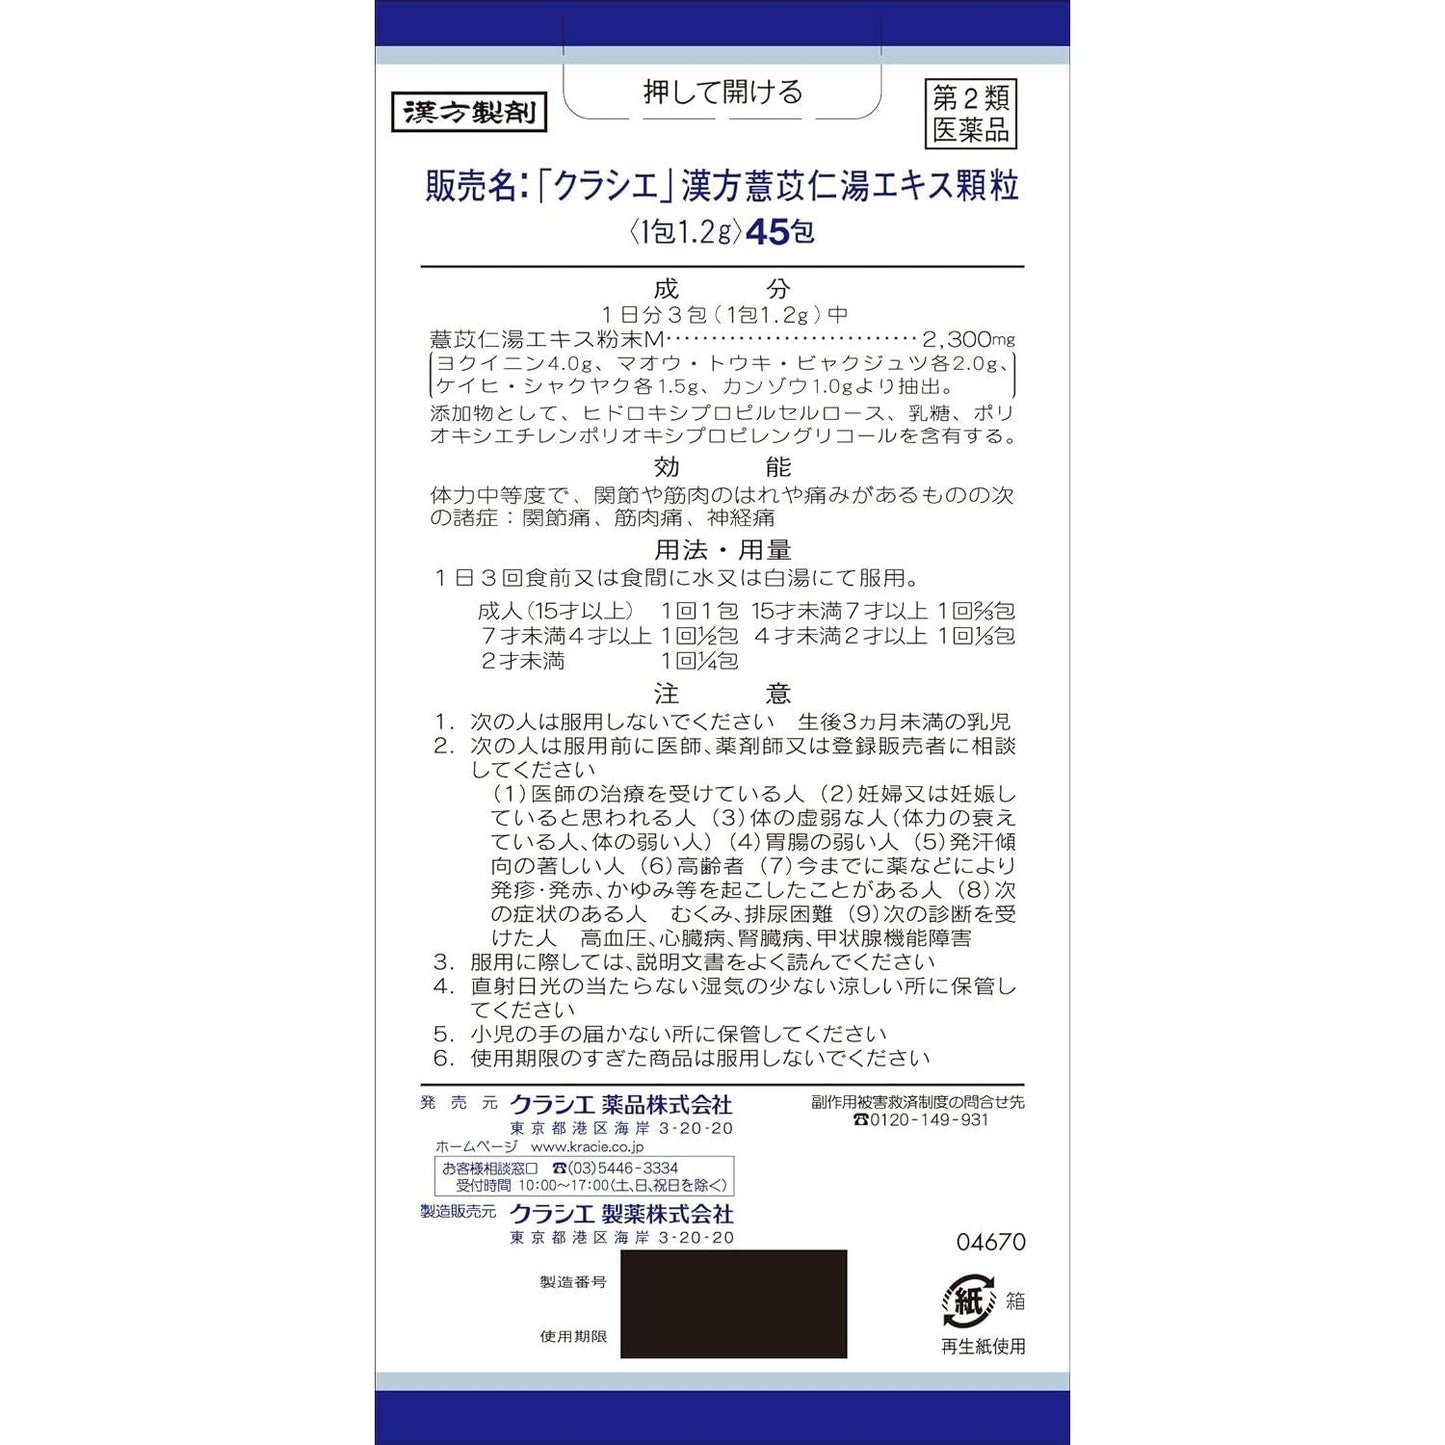 [第2類医薬品] Kracie製藥 漢方薏苡仁湯顆粒 45包 針對關節痛/肌肉痛 - 小熊藥妝 - 日本藥妝直送台灣